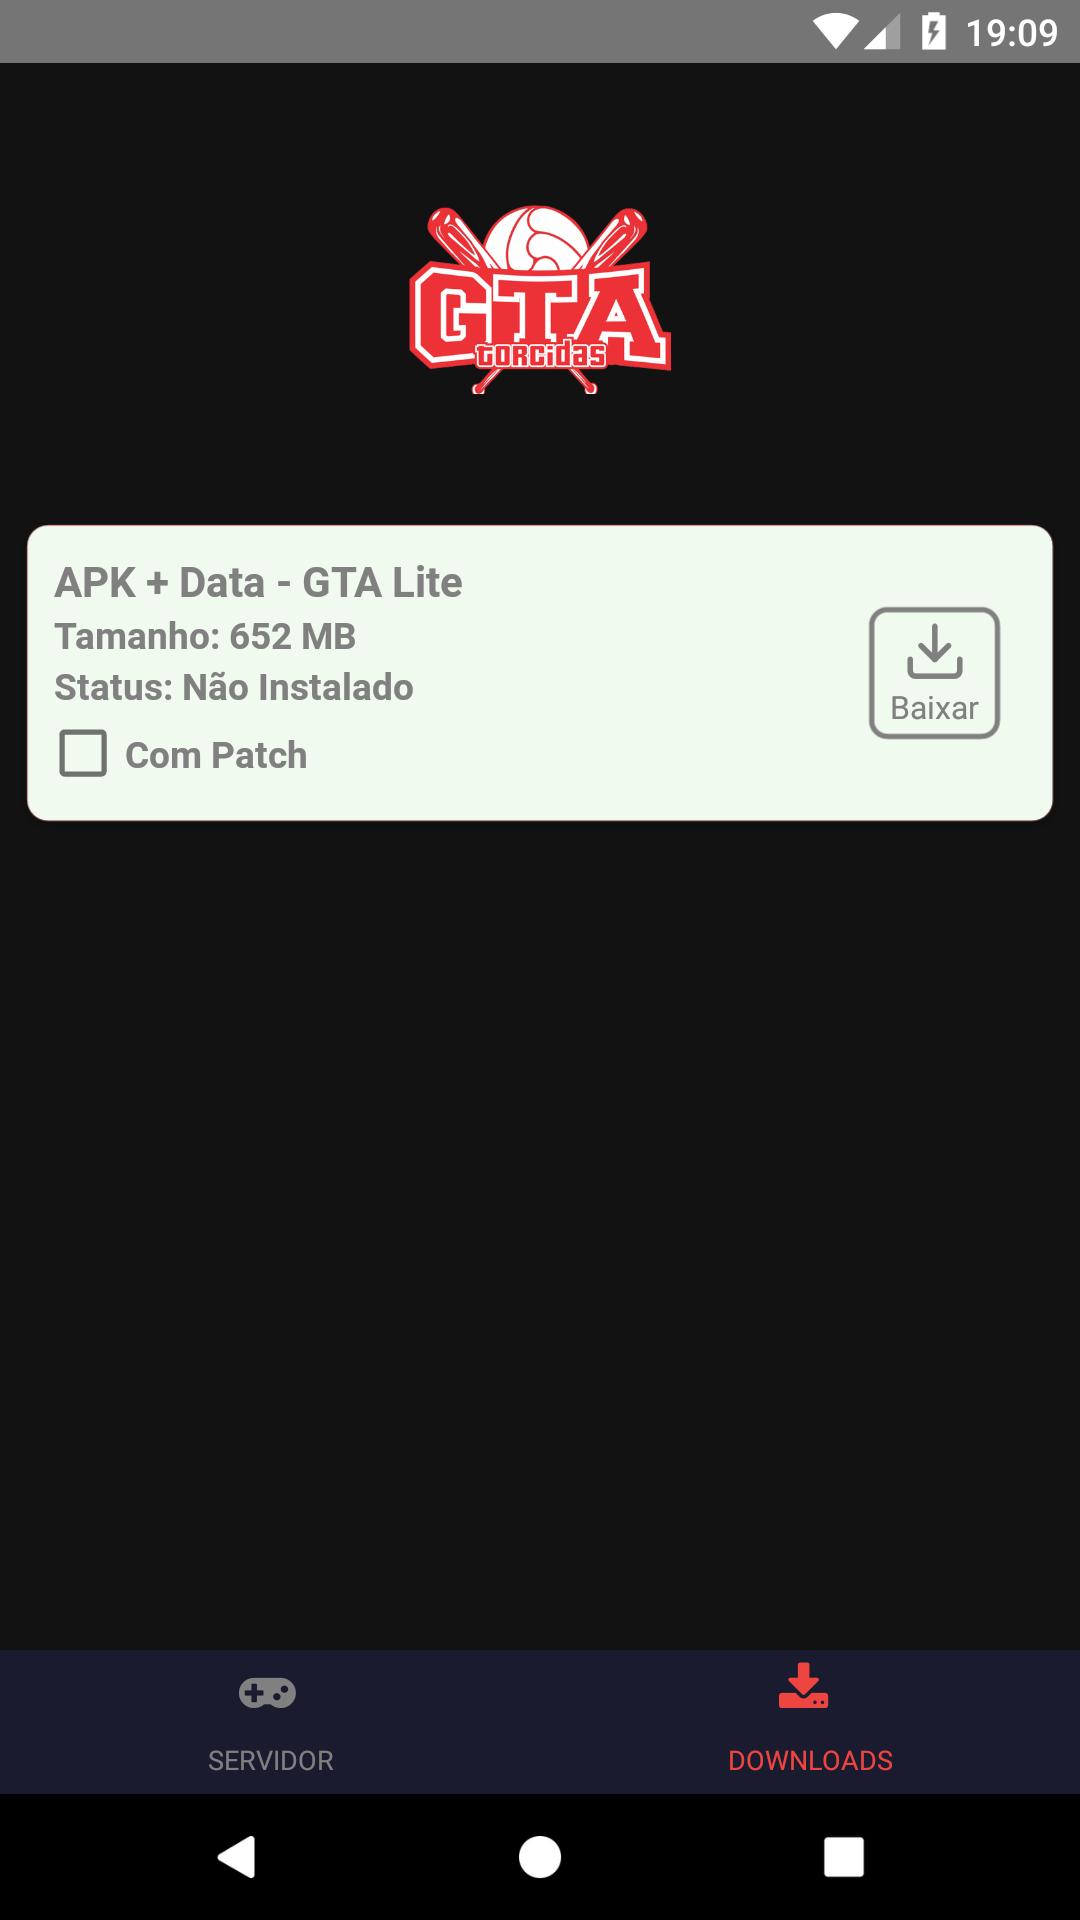 приложение ifruit для gta 5 на андроид фото 110